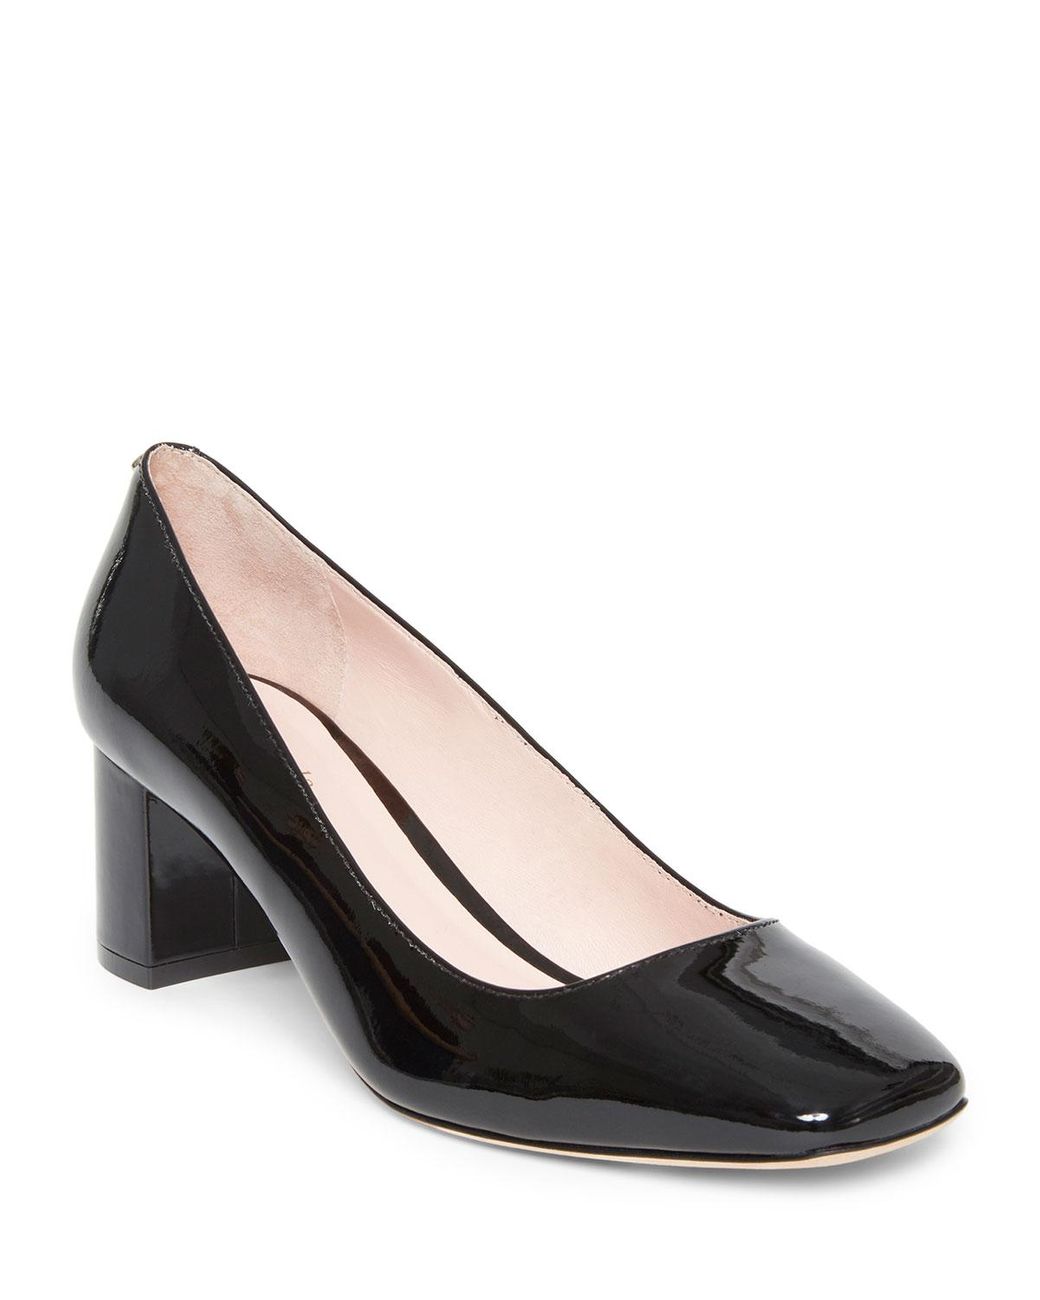 Kate Spade Leather Kylah Mid-heel Patent Pumps in Black 2 (Black) - Lyst